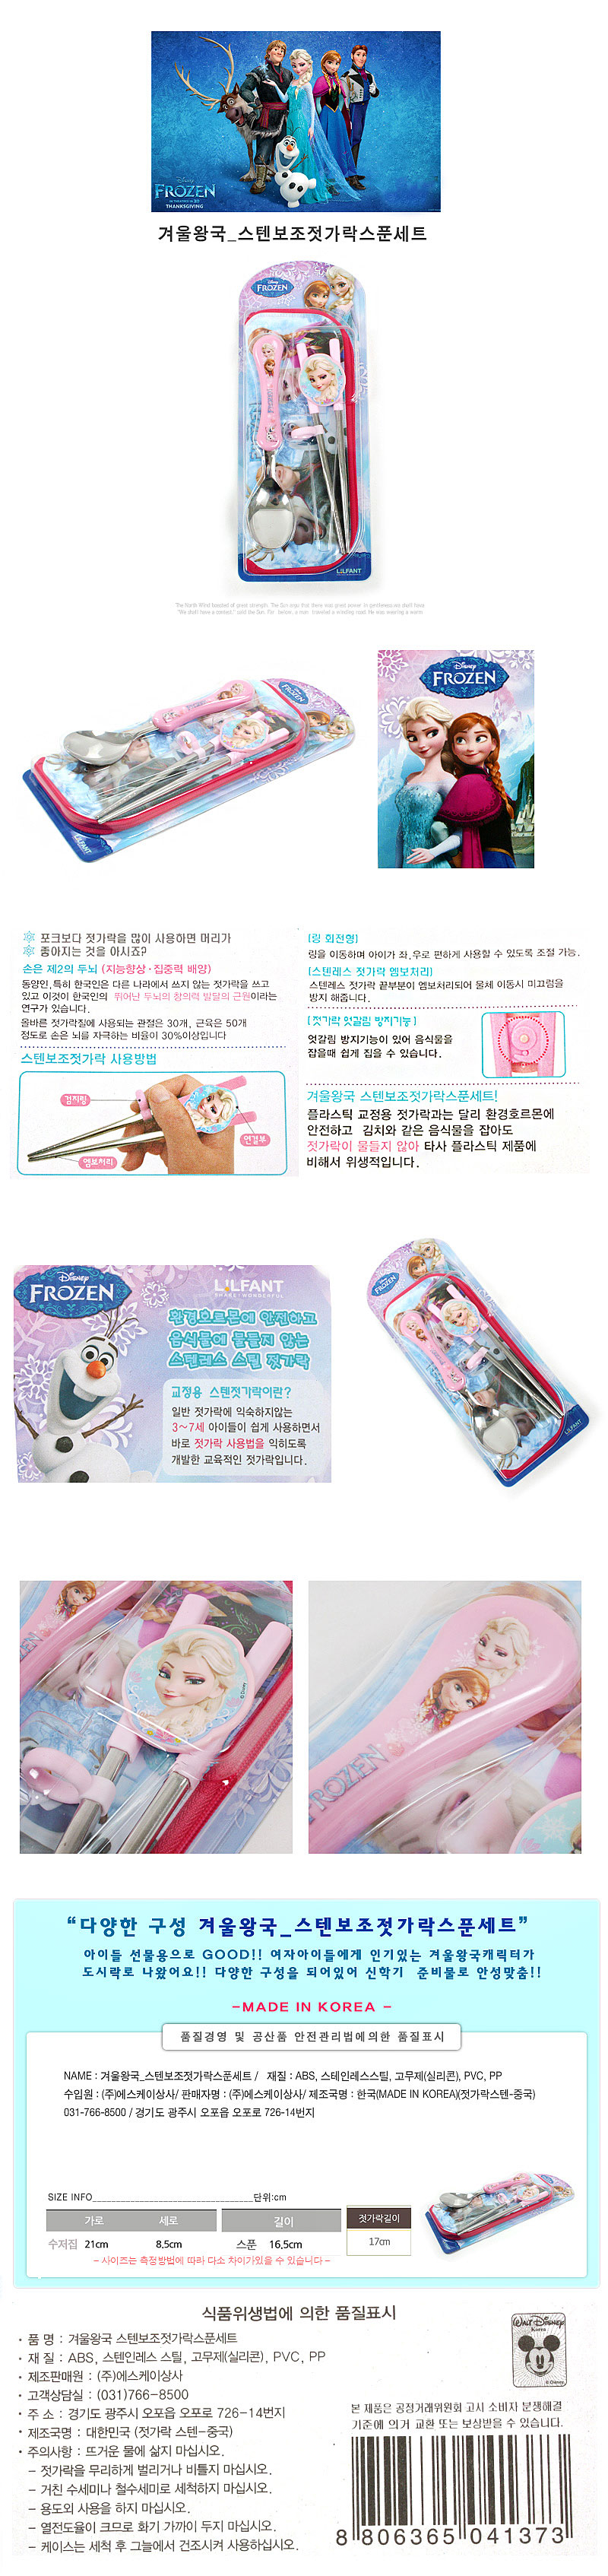 韓國製冰雪奇緣餐具三件組